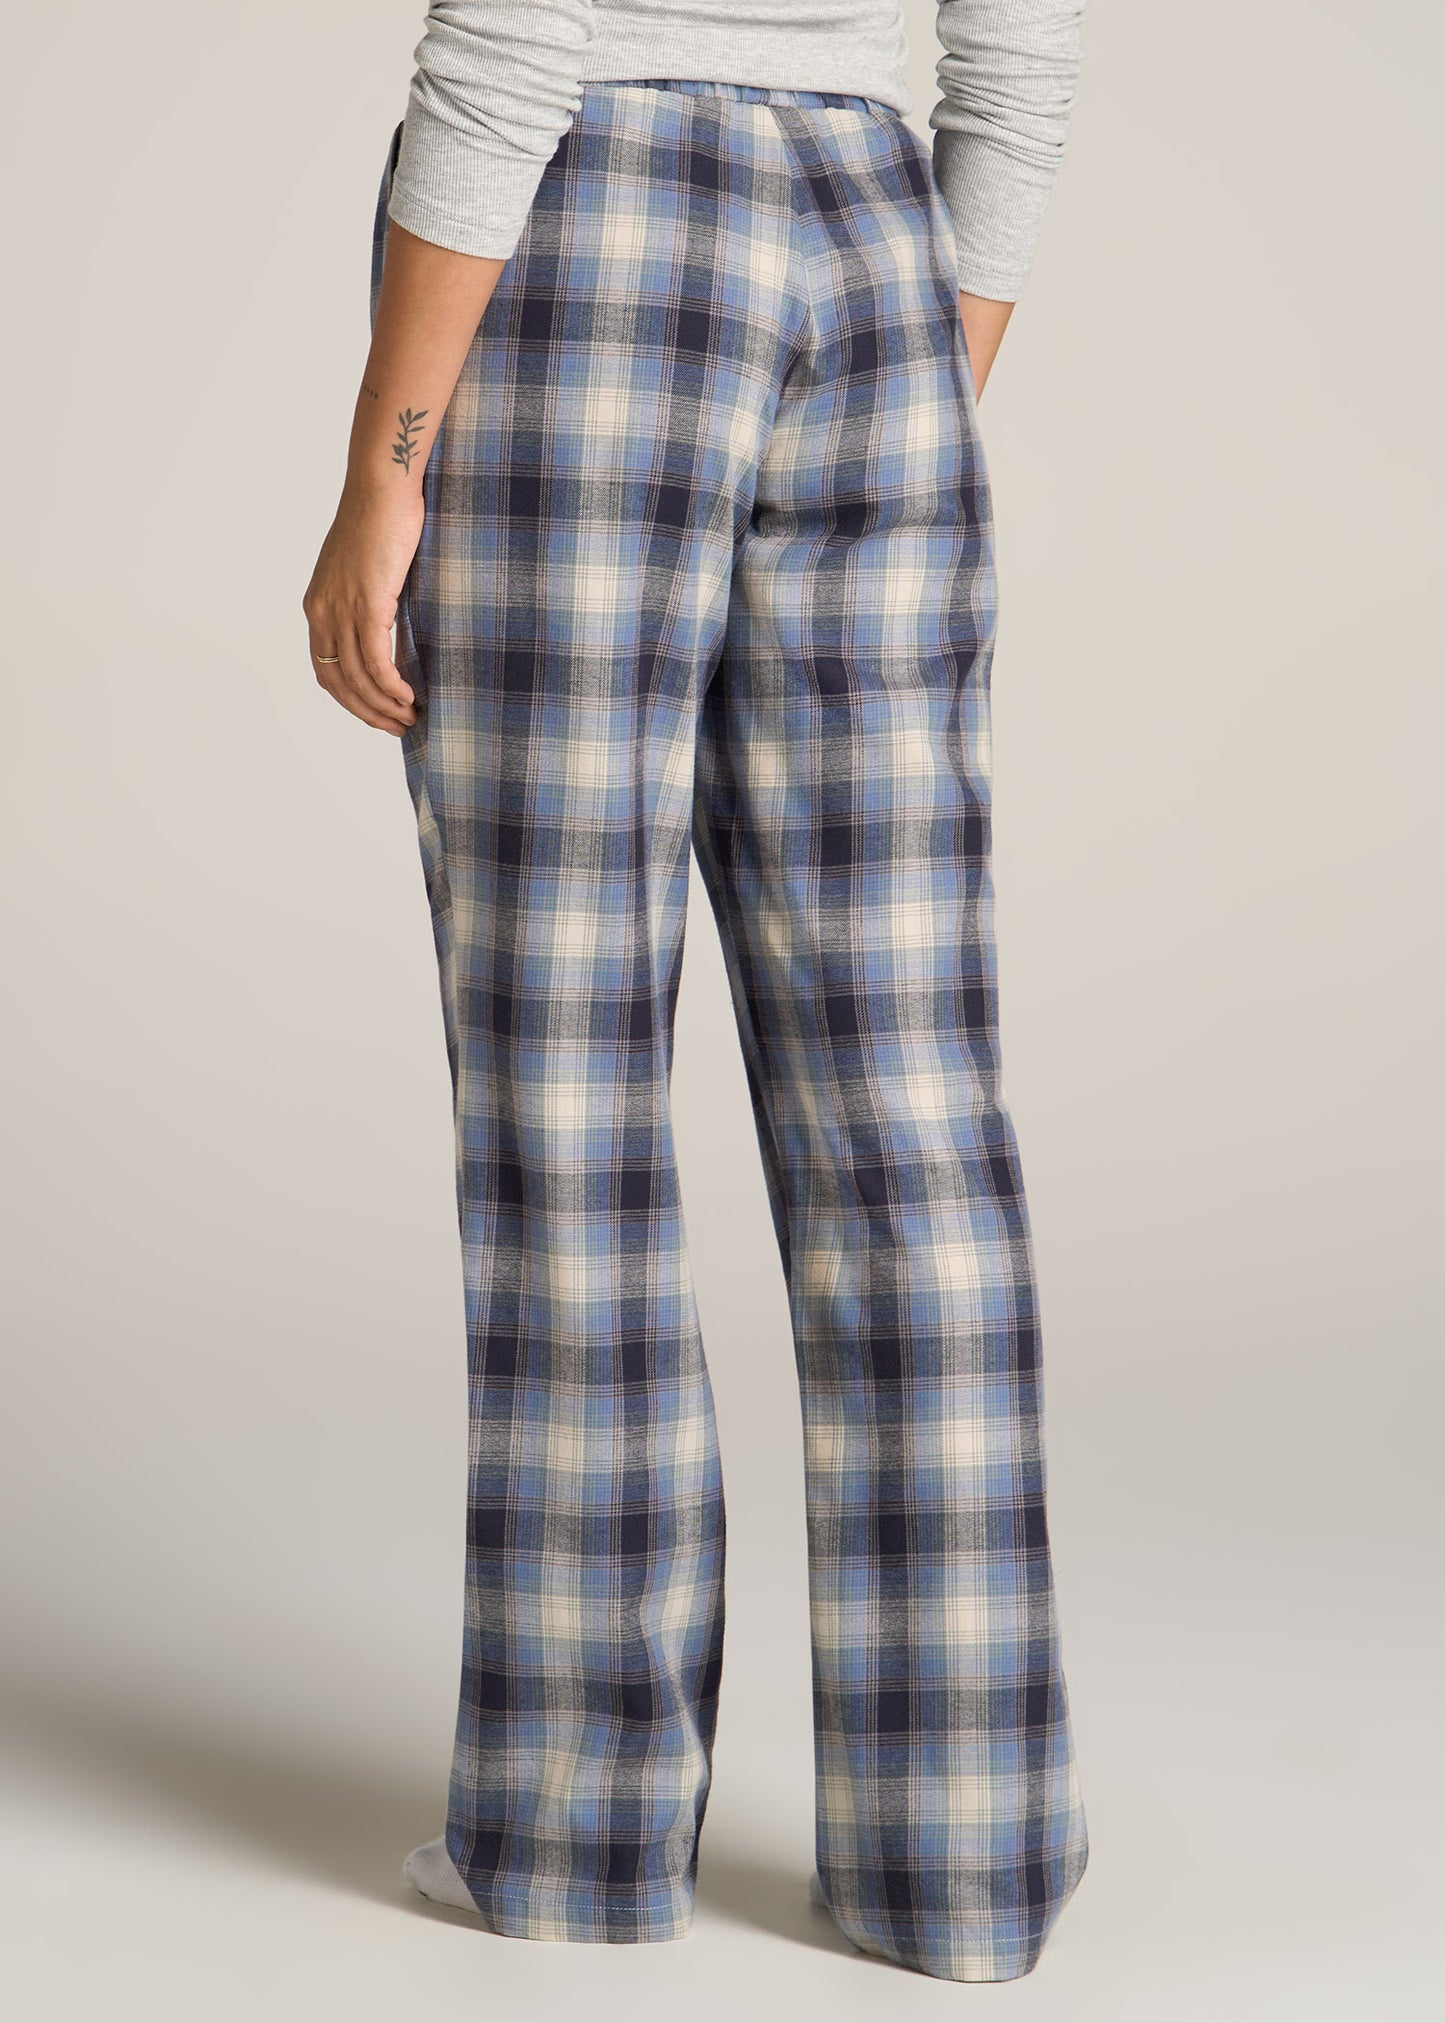 American-Tall-Women-Tie-Waist-Open-Bottom-Flannel-PJ-Pants-Blue-Grey-Weave-back